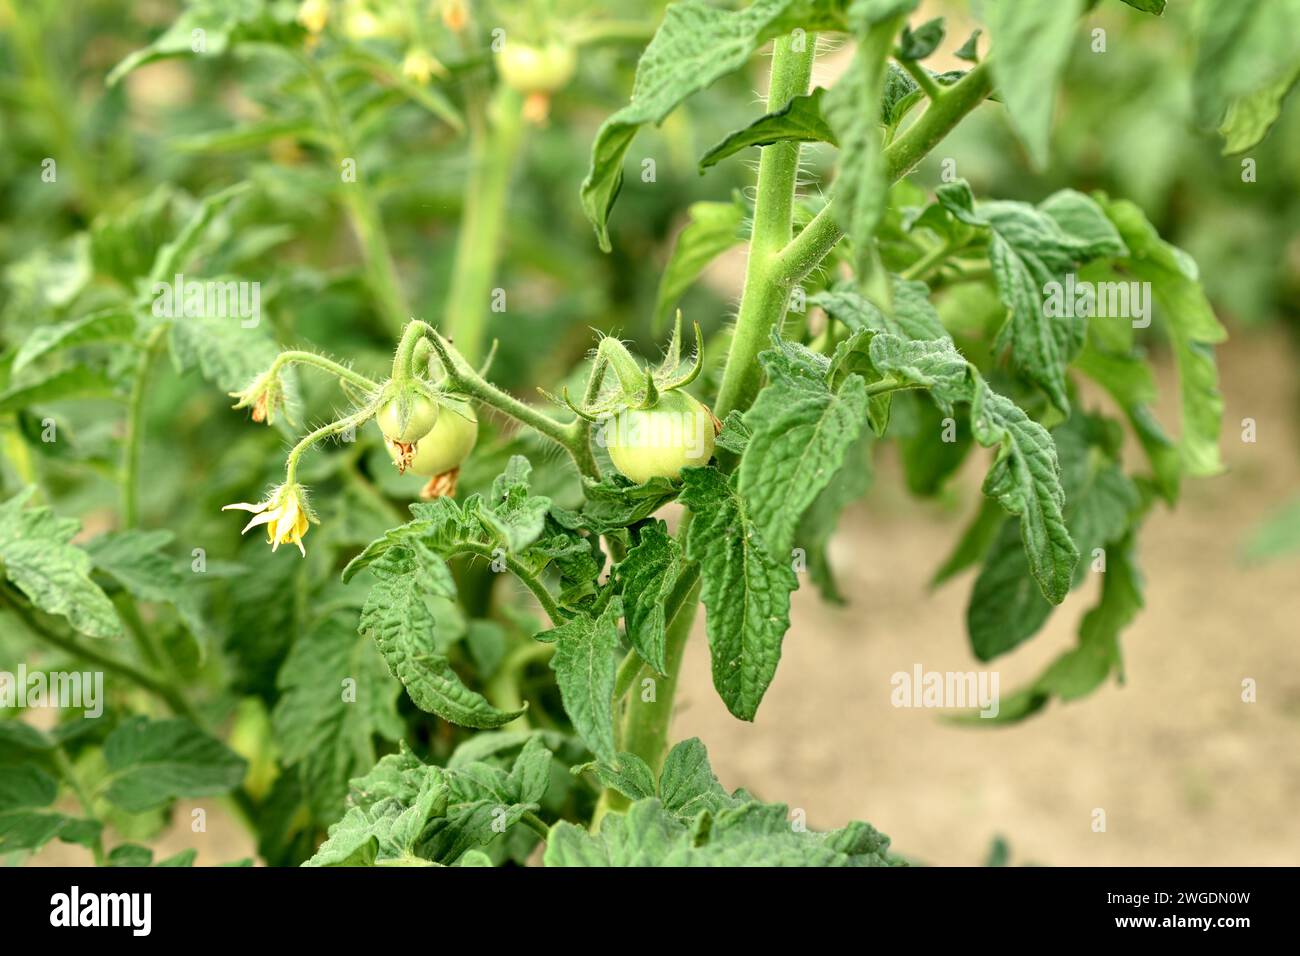 Cespuglio di pomodoro. Fiori fioriti sui rami del cespuglio e apparvero ovaie verdi di pomodoro. Foto Stock